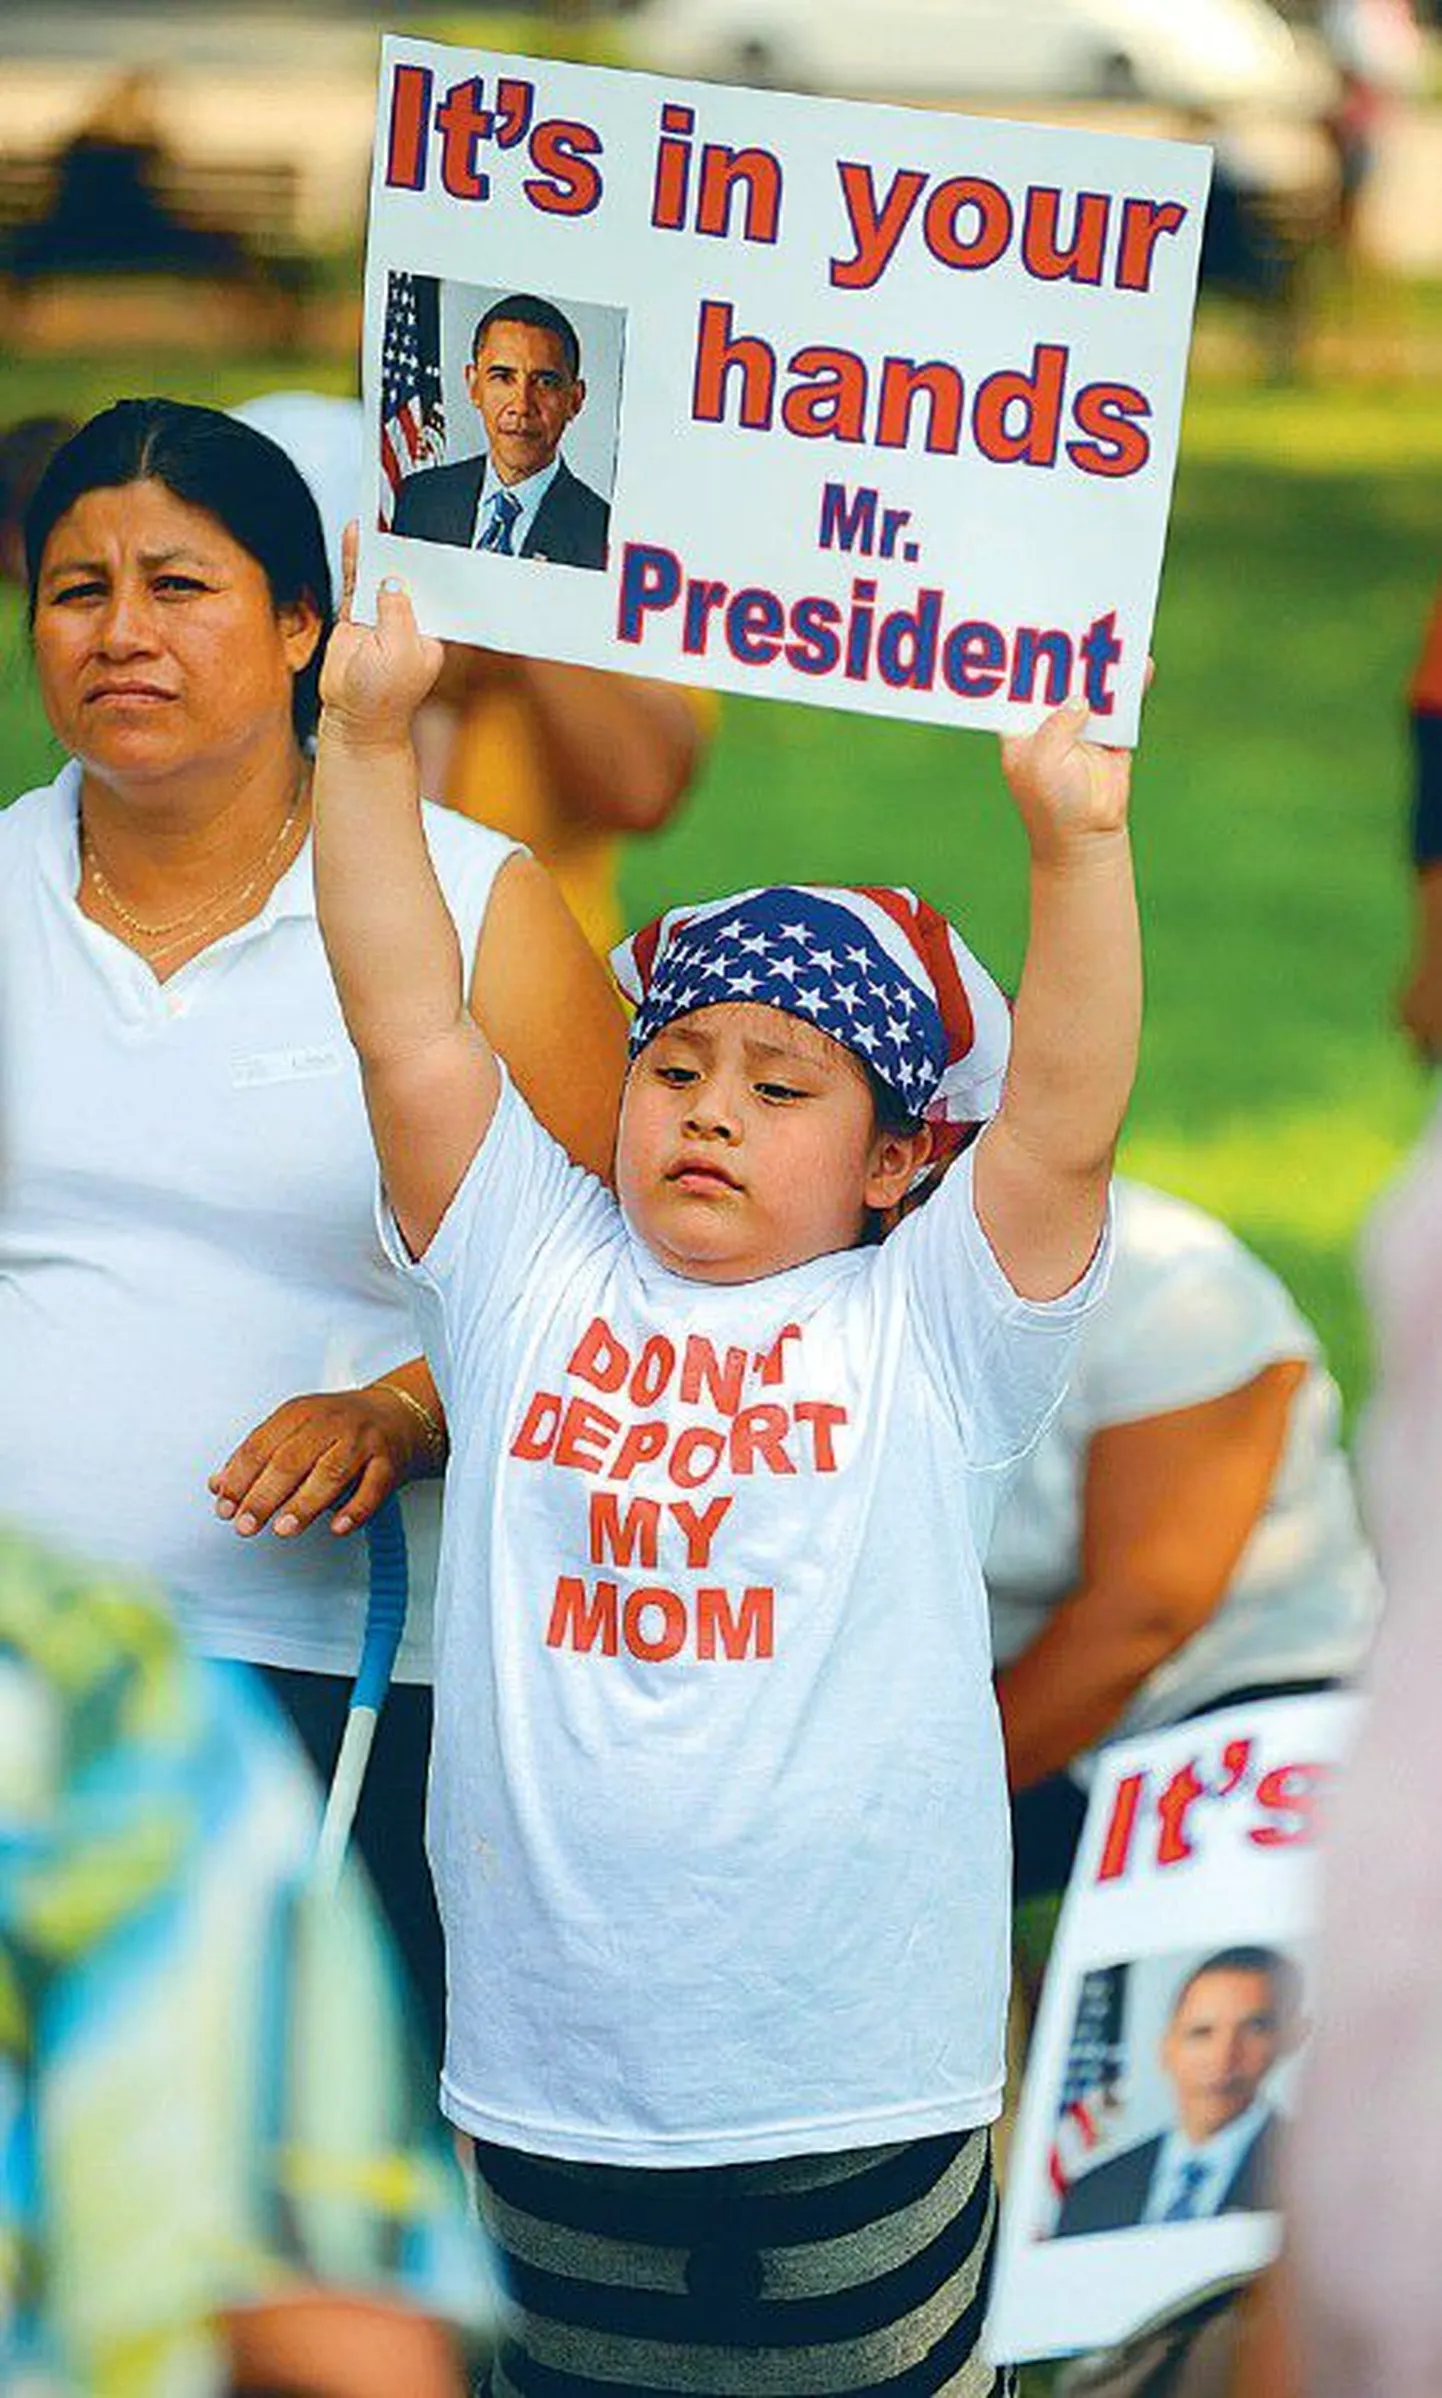 «Это в твоих руках, господин президент», написано на плакате в руках мальчика, участвовавшего в демонстрации перед Белым домом в защиту нелегальных иммигрантов в США. Надпись на футболке призывает не высылать его мать из страны.